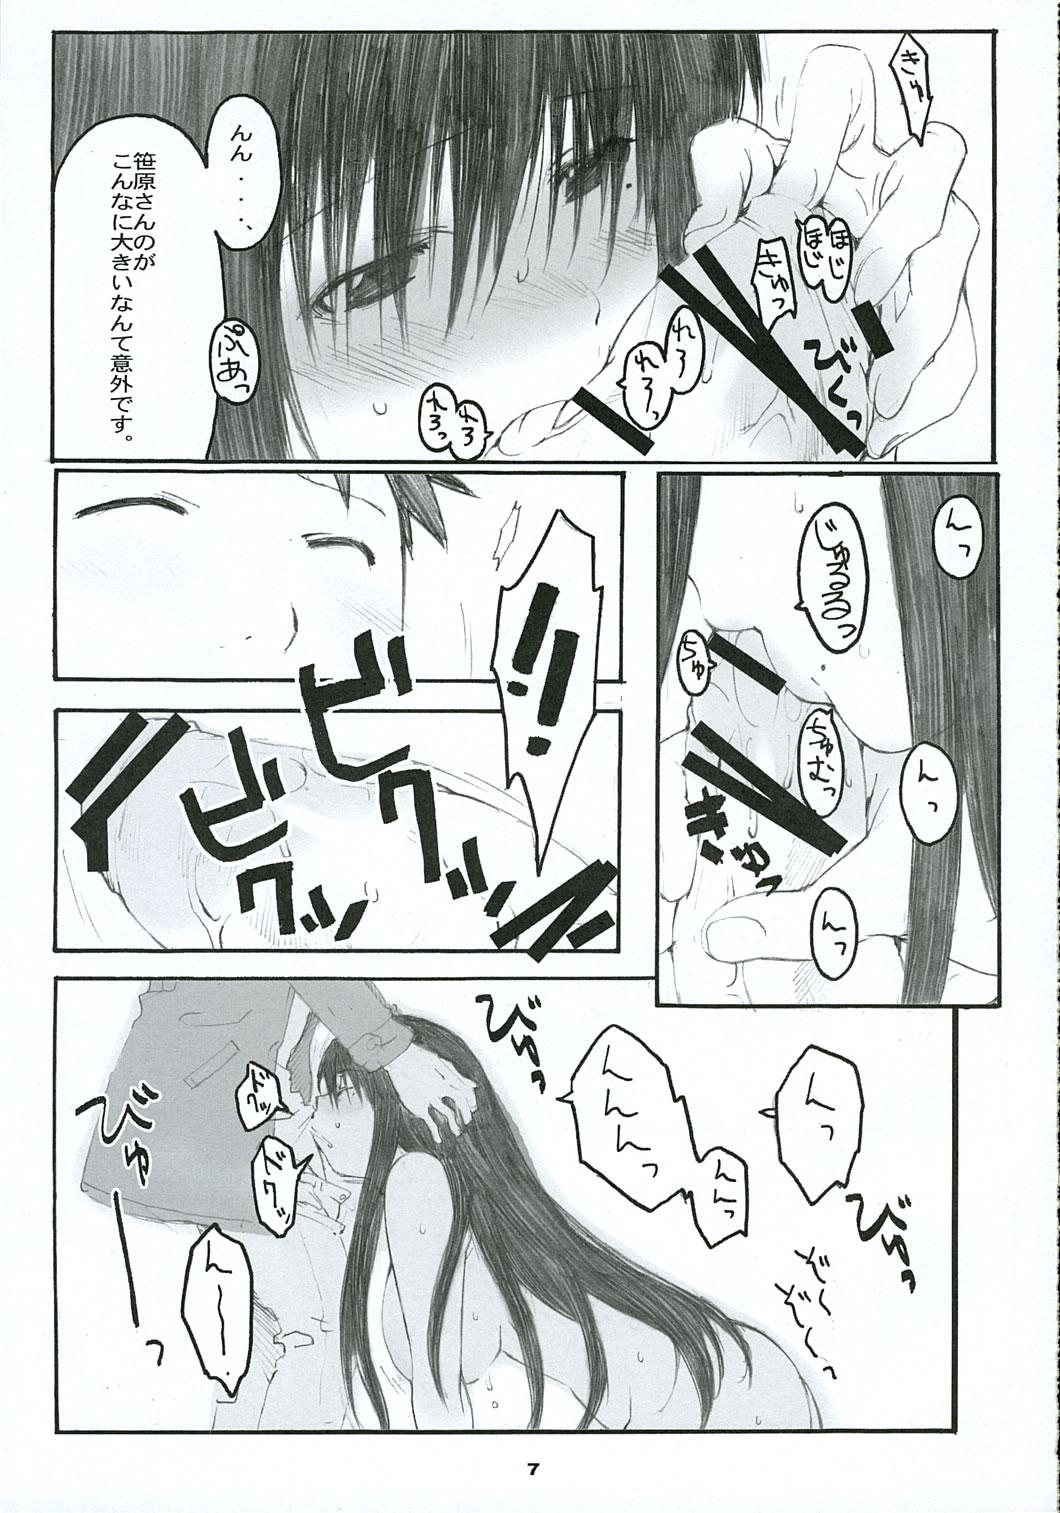 Comendo Oono Shiki #2 - Genshiken Girl Gets Fucked - Page 6